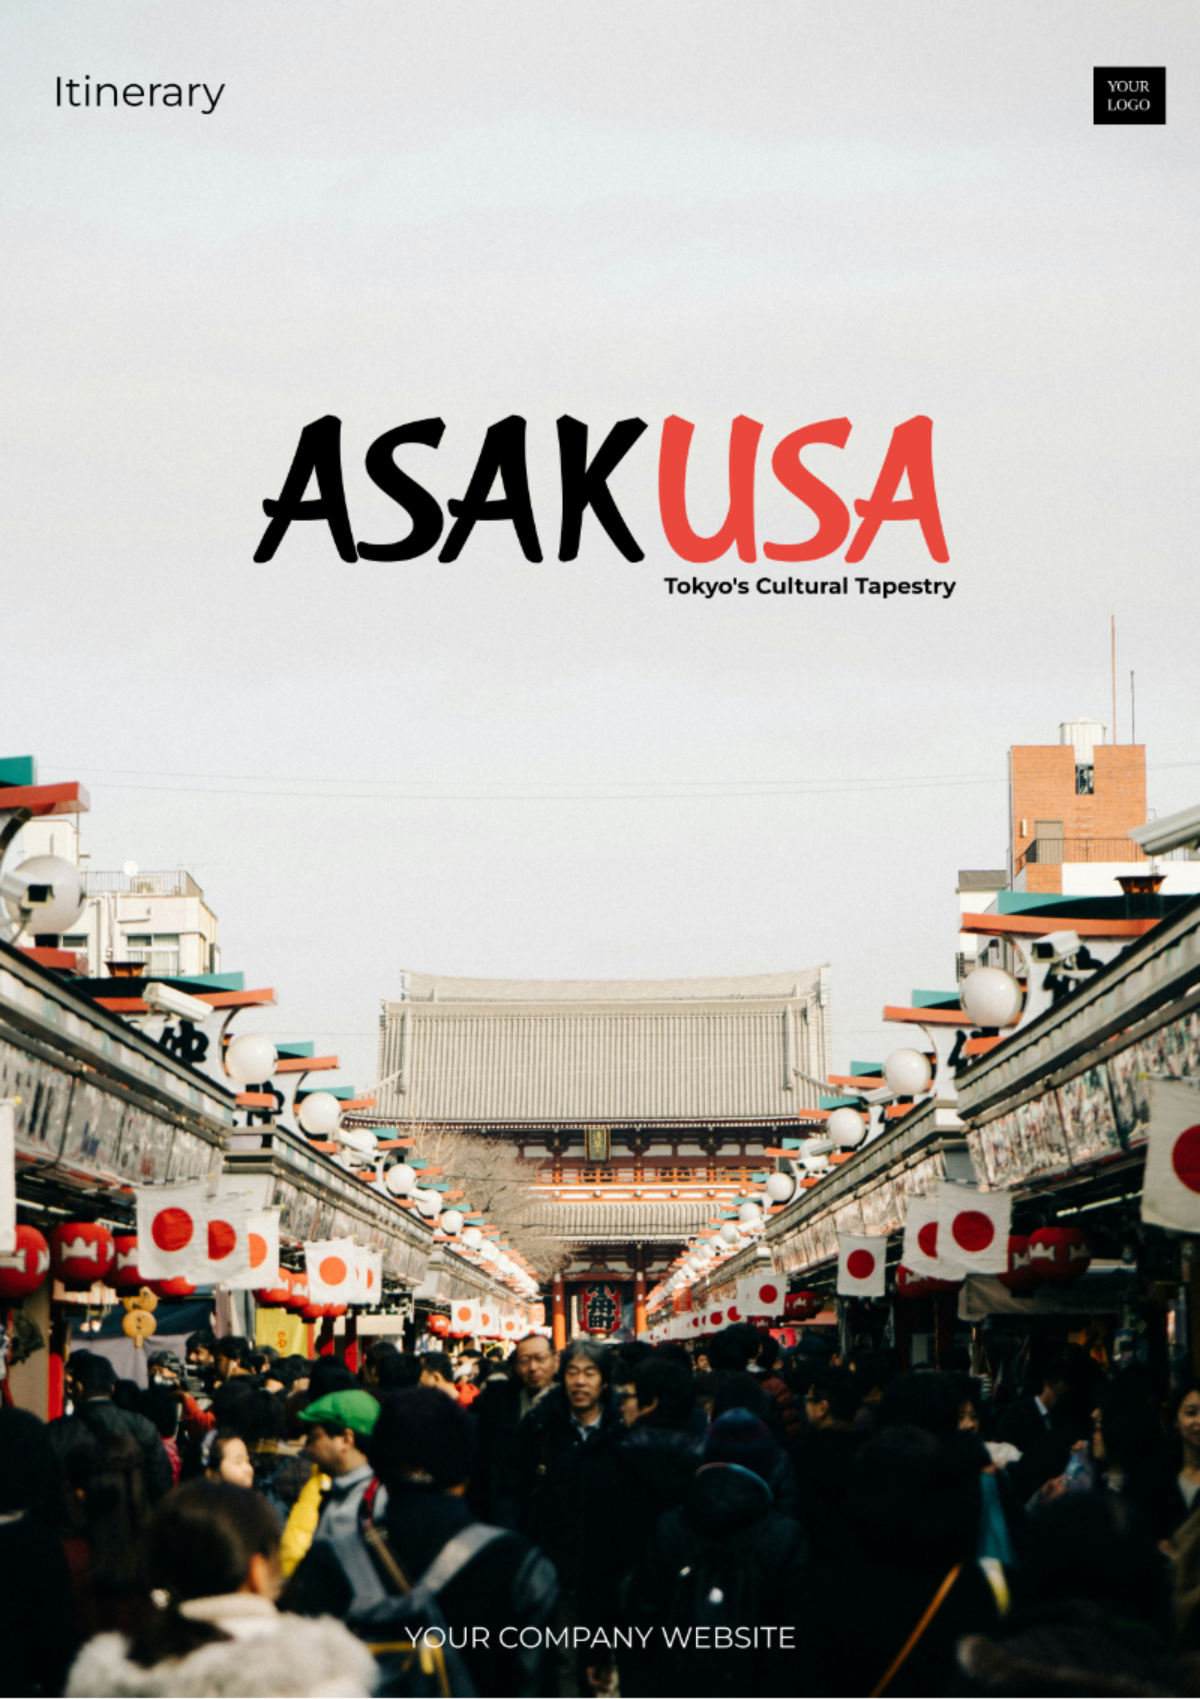 Asakusa Itinerary Template